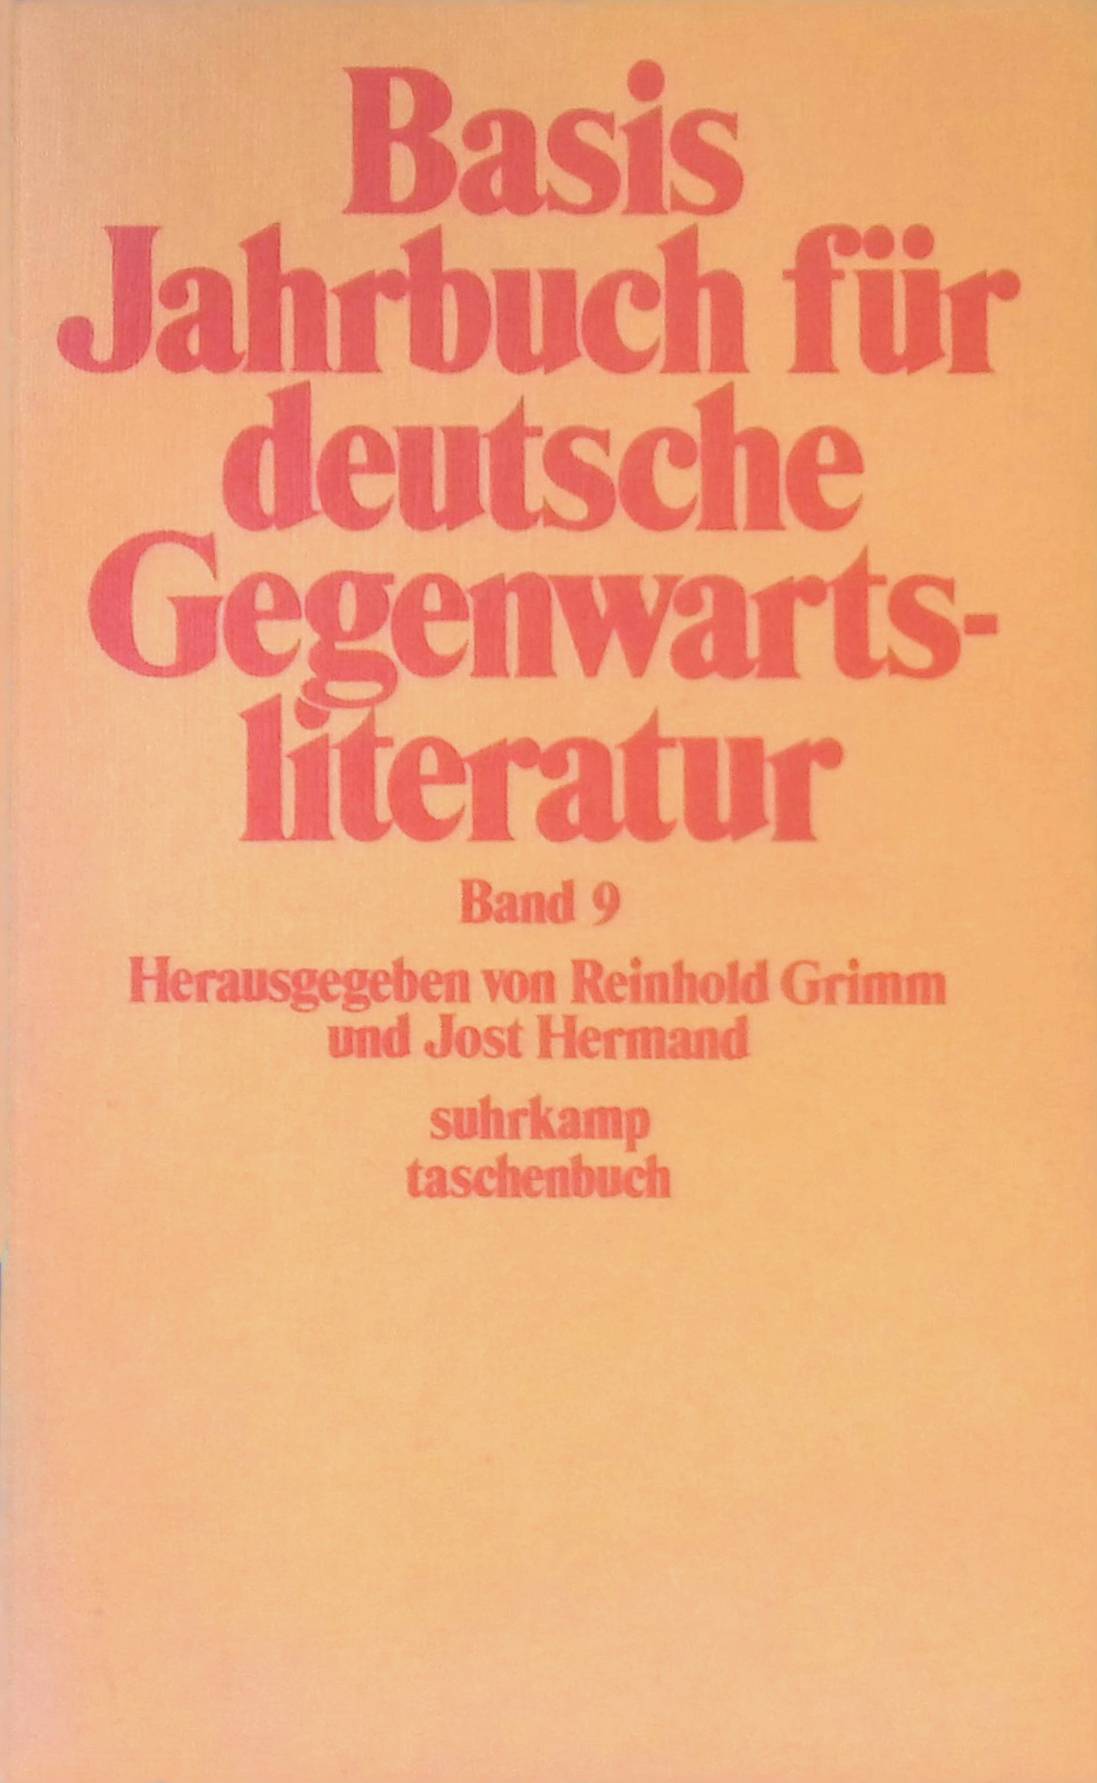 Basis Jahrbuch für deutsche Gegenwartsliteratur Band 9. (Edition suhrkamp Band 553) - Grimm, Reinhold (Hrsg.) und Jost (Hrsg.) Hermand